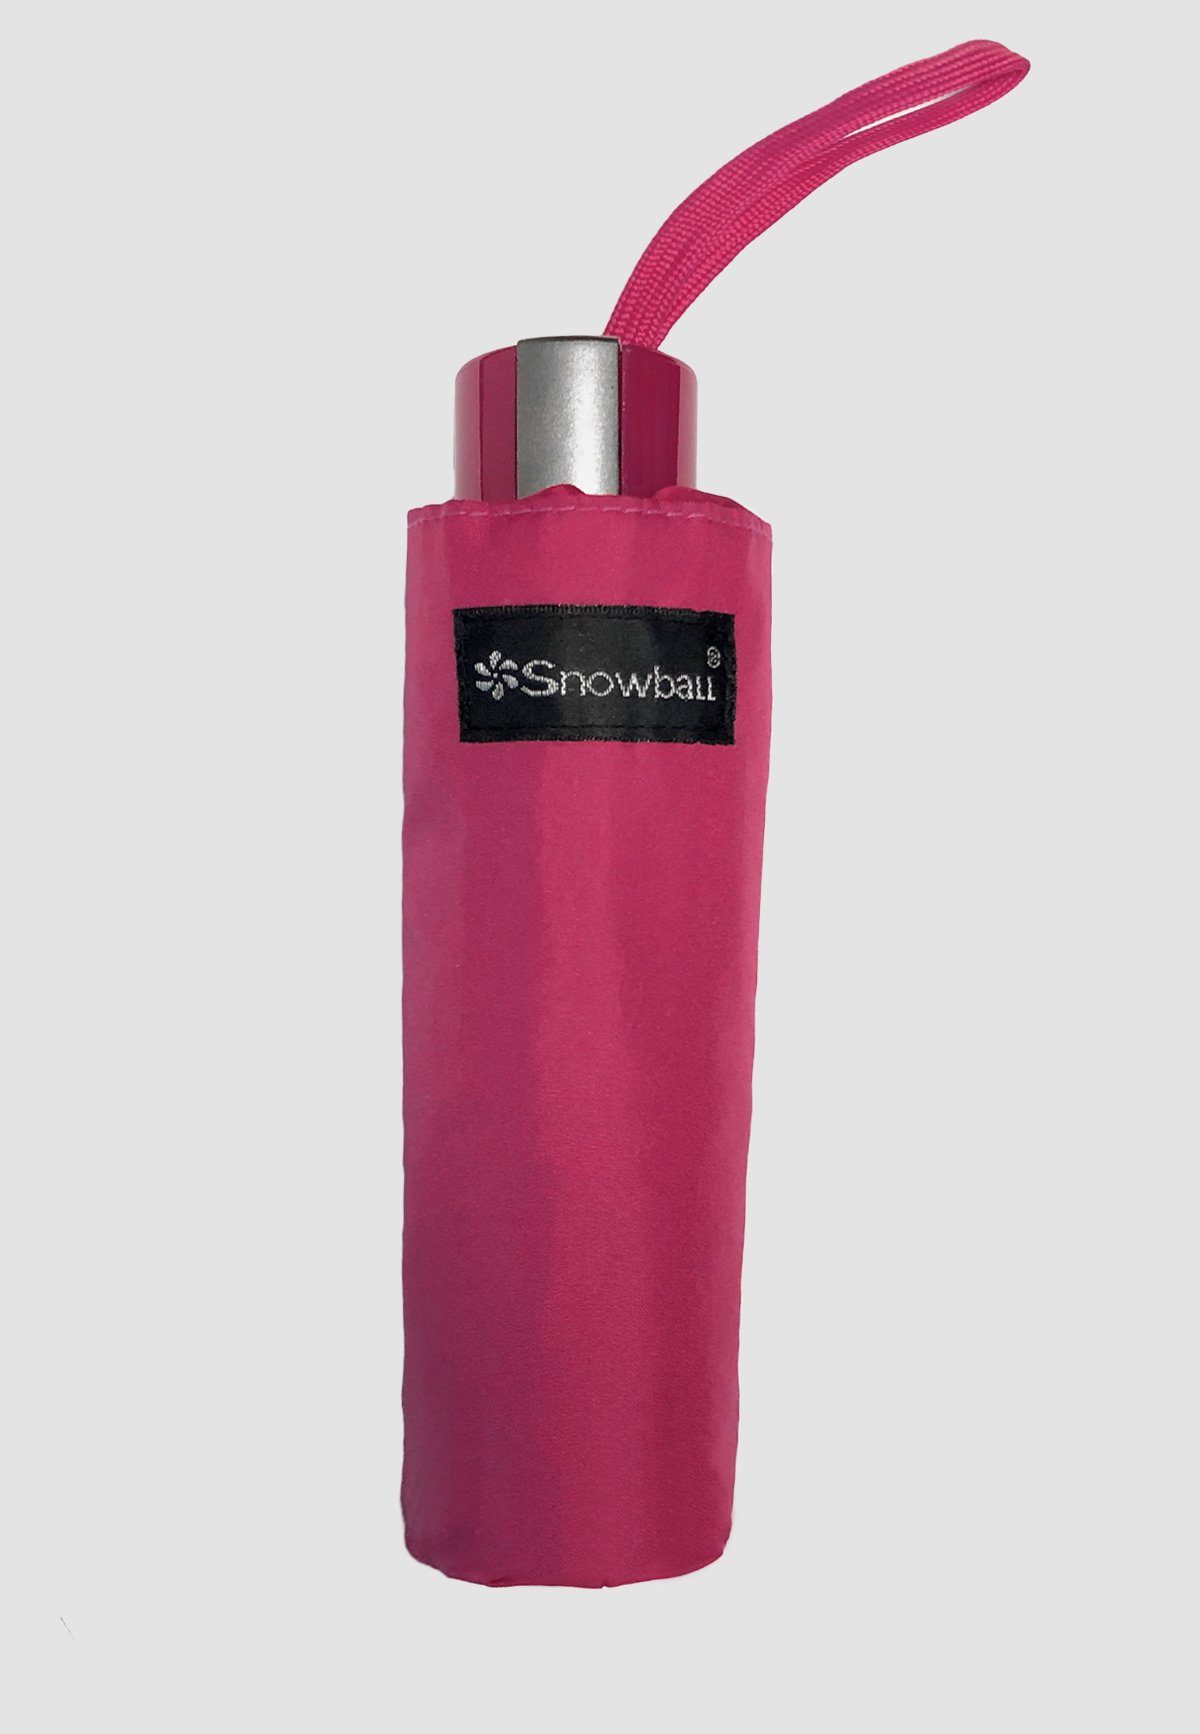 ANELY Kleiner Leichte Ausführung, 4683 Taschen Regenschirm Taschenregenschirm Pink in